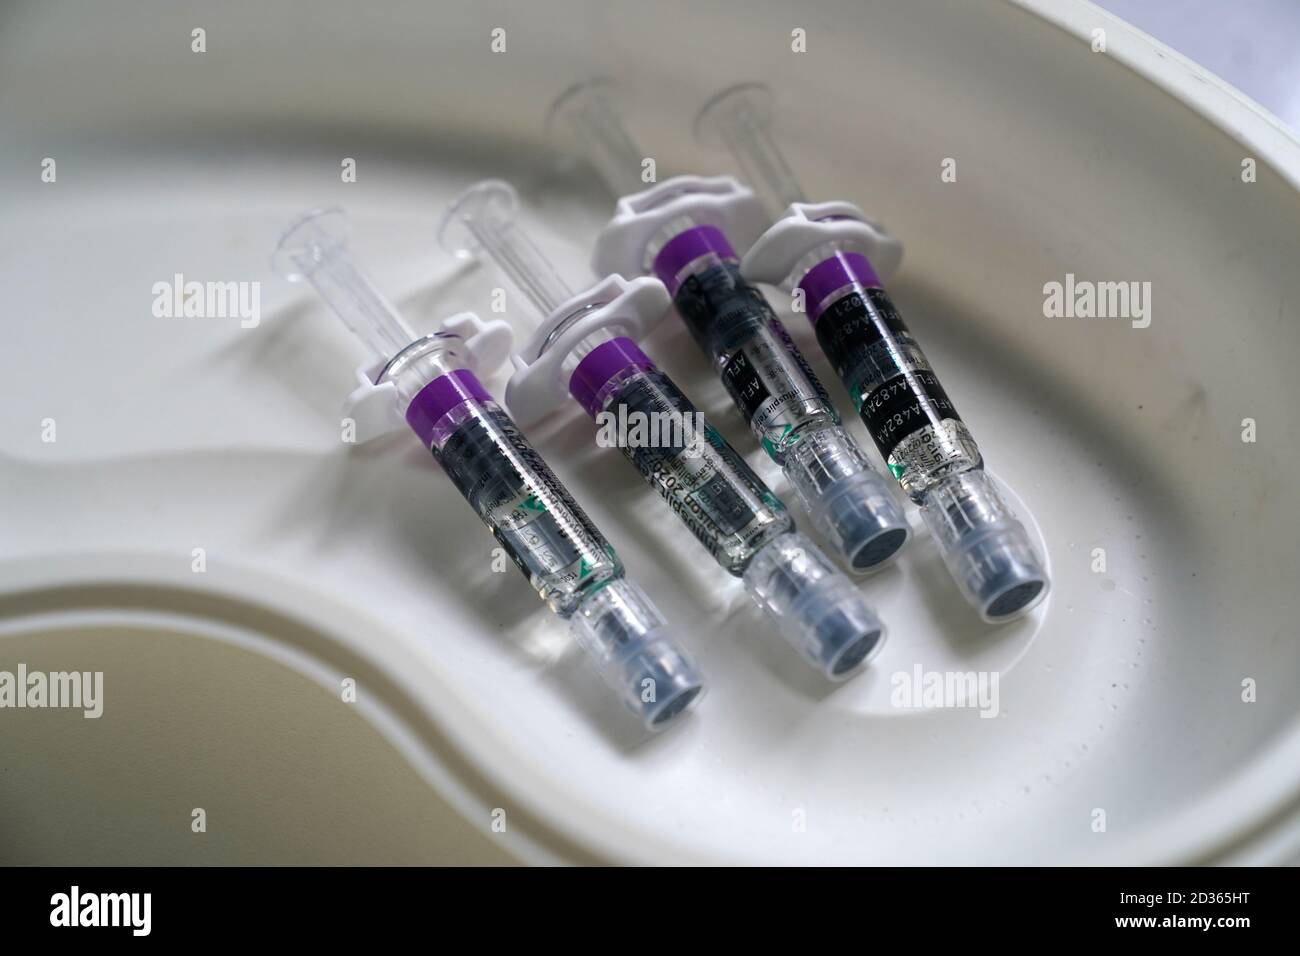 06 octobre 2020, Hambourg: Des seringues avec le médicament Influsplit Tetra, un vaccin contre la grippe, sont sur une table. Photo: Marcus Brandt/dpa Banque D'Images